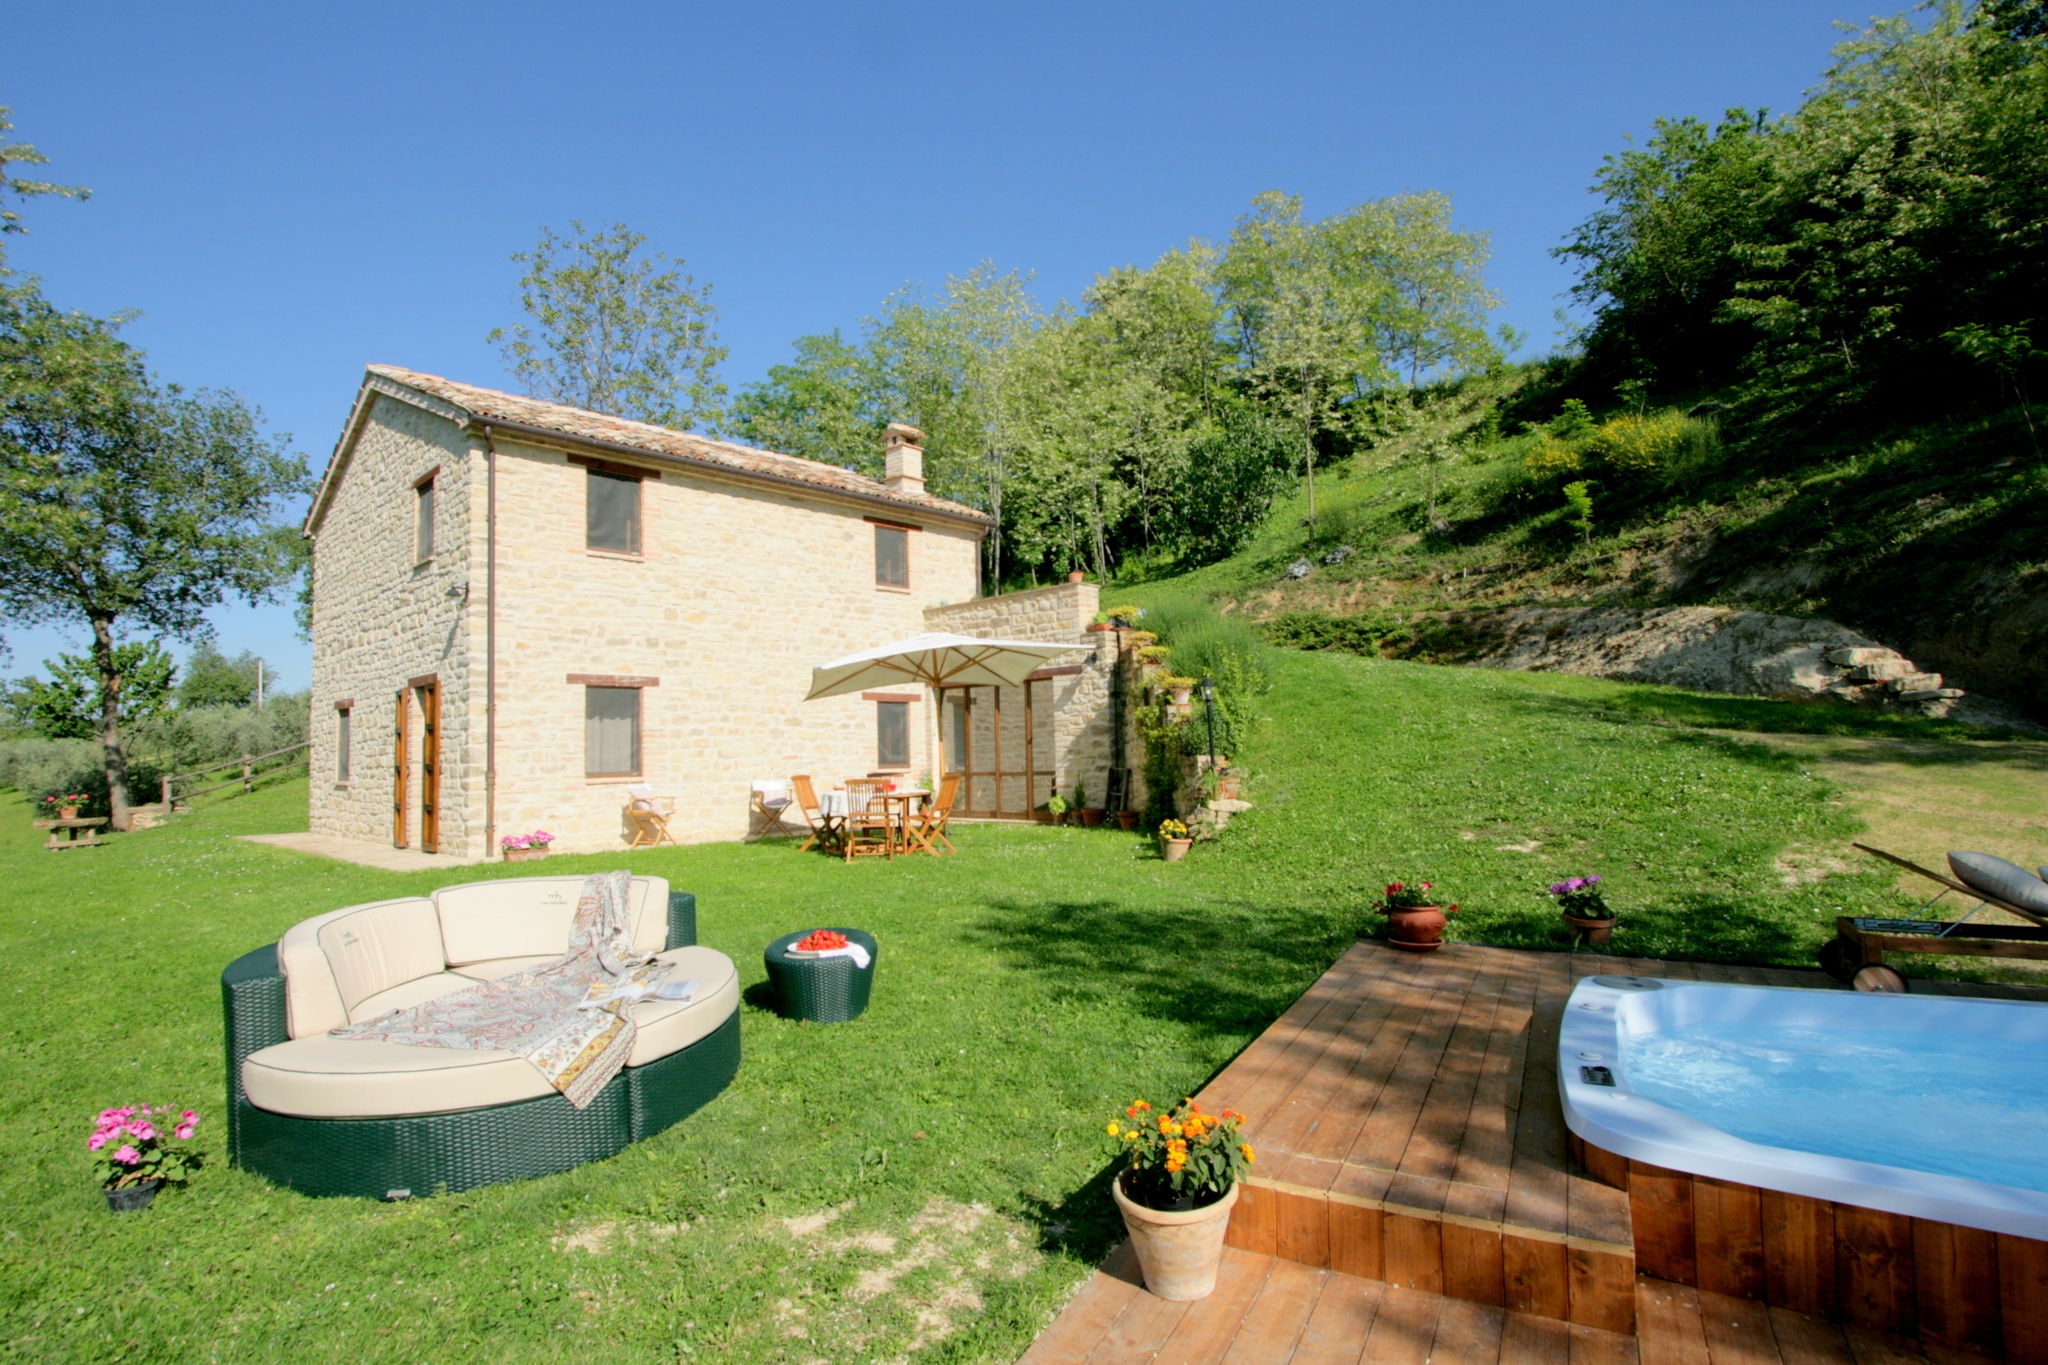 Vrijstaande villa in Monte San Martino met een zwembad